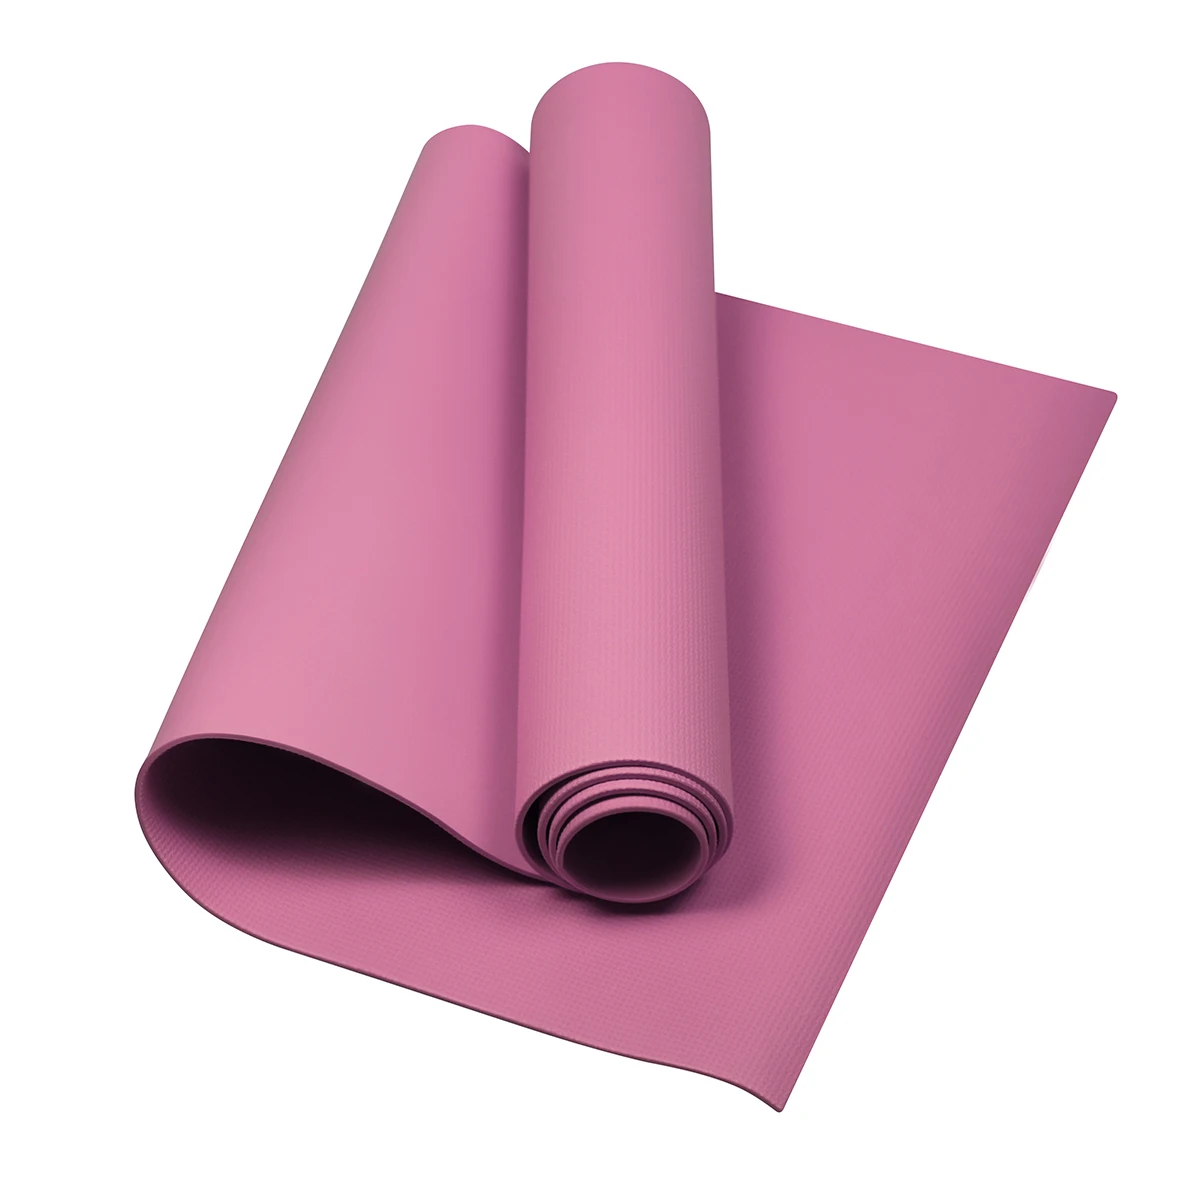 Горячая Распродажа 4 мм EVA коврики для йоги противоскользящее одеяло EVA гимнастический Спорт Здоровье похудение фитнес-коврик для упражнений женский Коврик для йоги и спорта - Цвет: 05